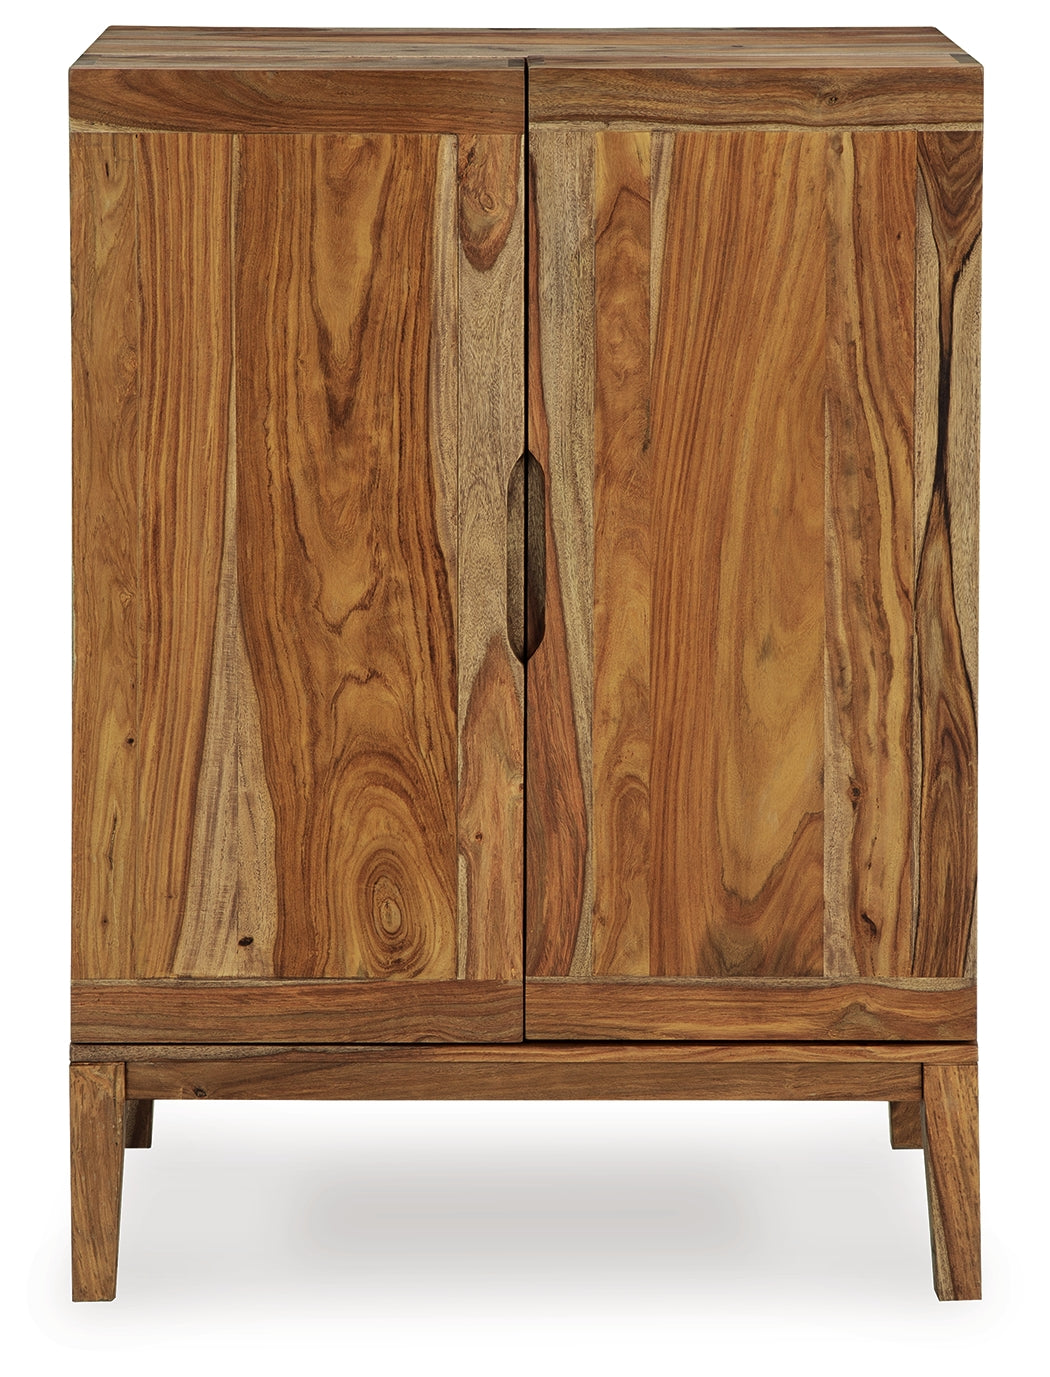 Dressonni Brown Bar Cabinet - D790-66 - Luna Furniture